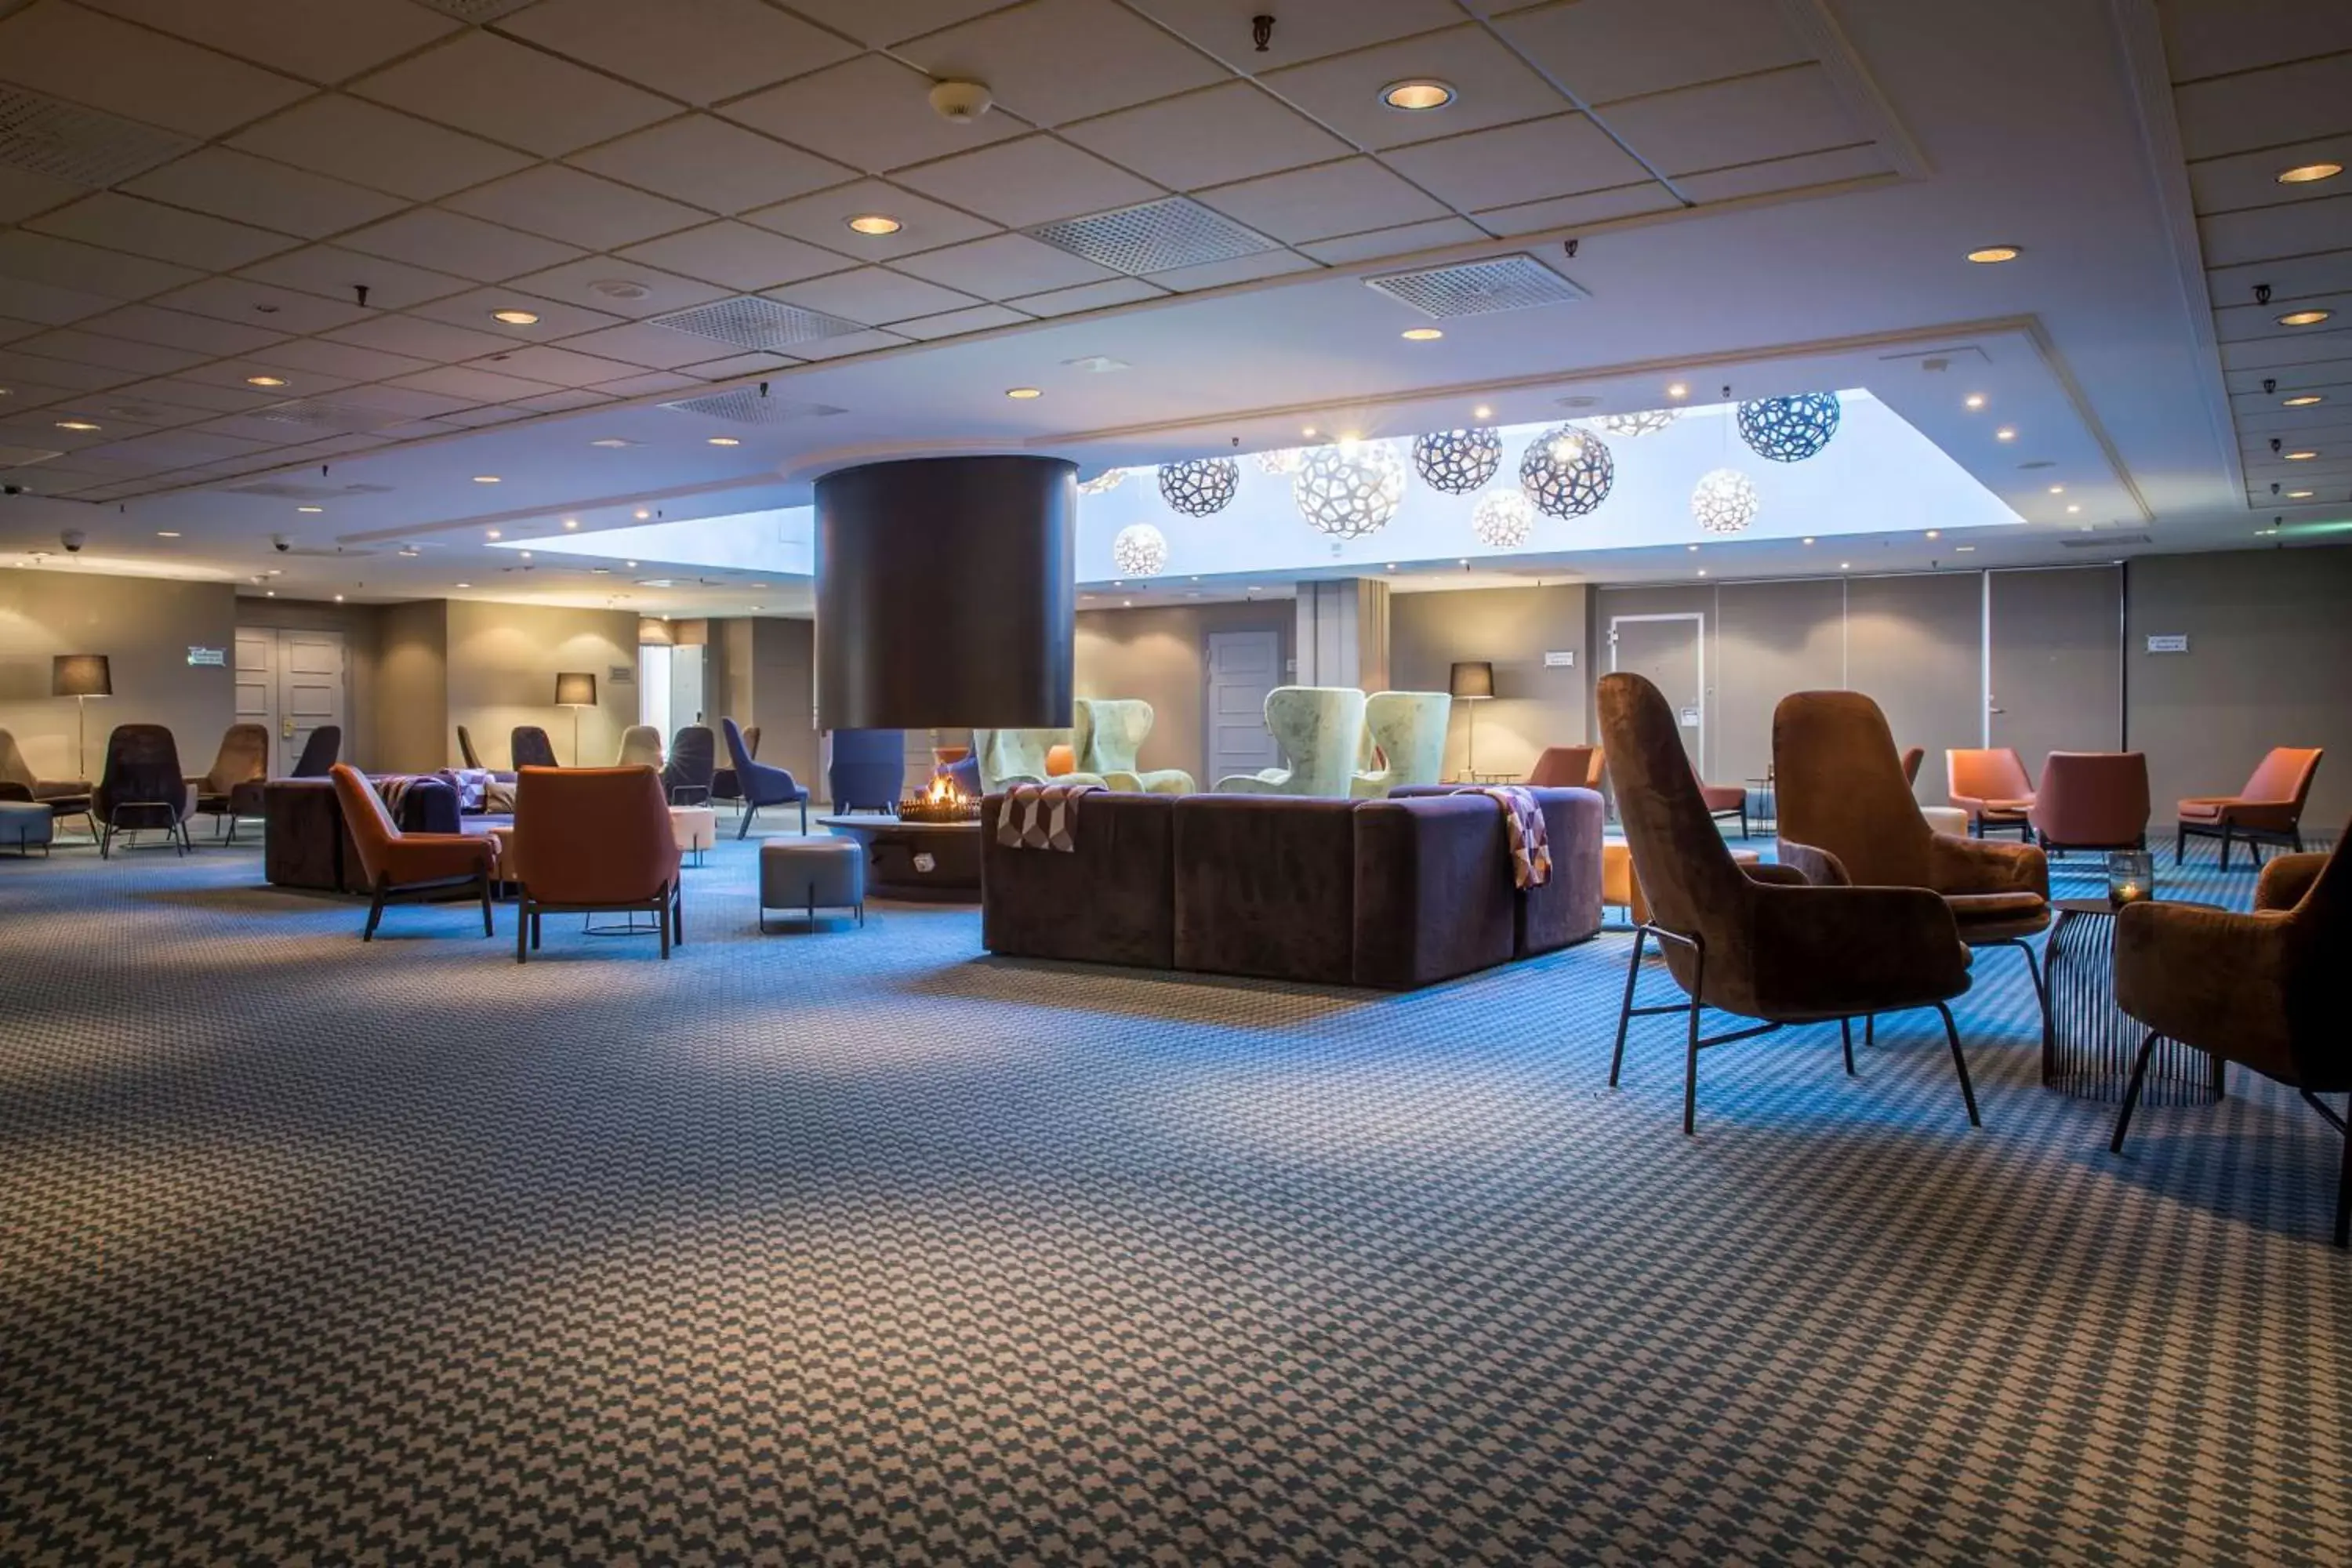 Lobby or reception in Radisson Blu Hotel Bodø